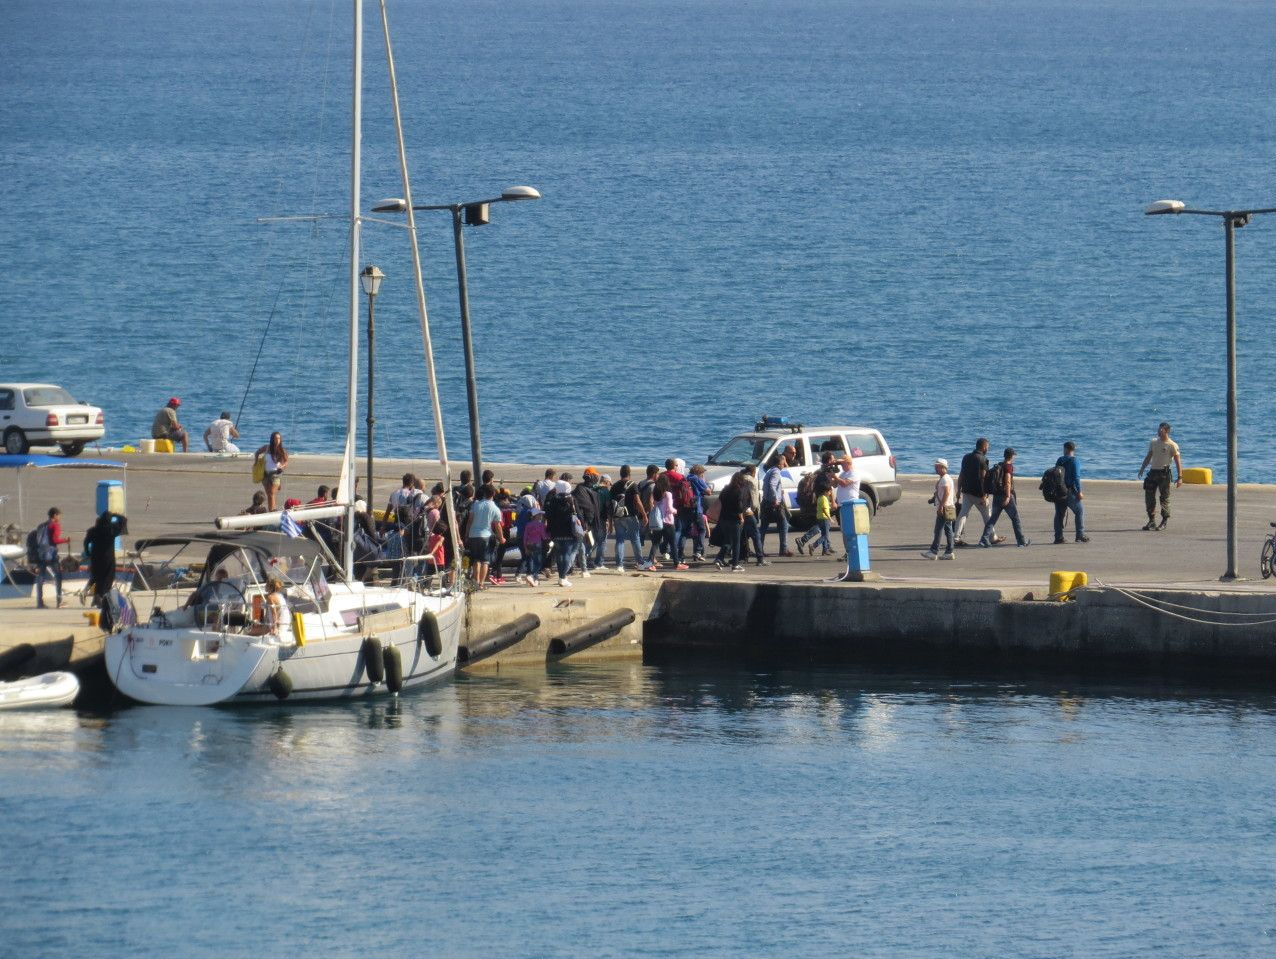 一艘移民船在希腊海域沉没 至少15人死亡